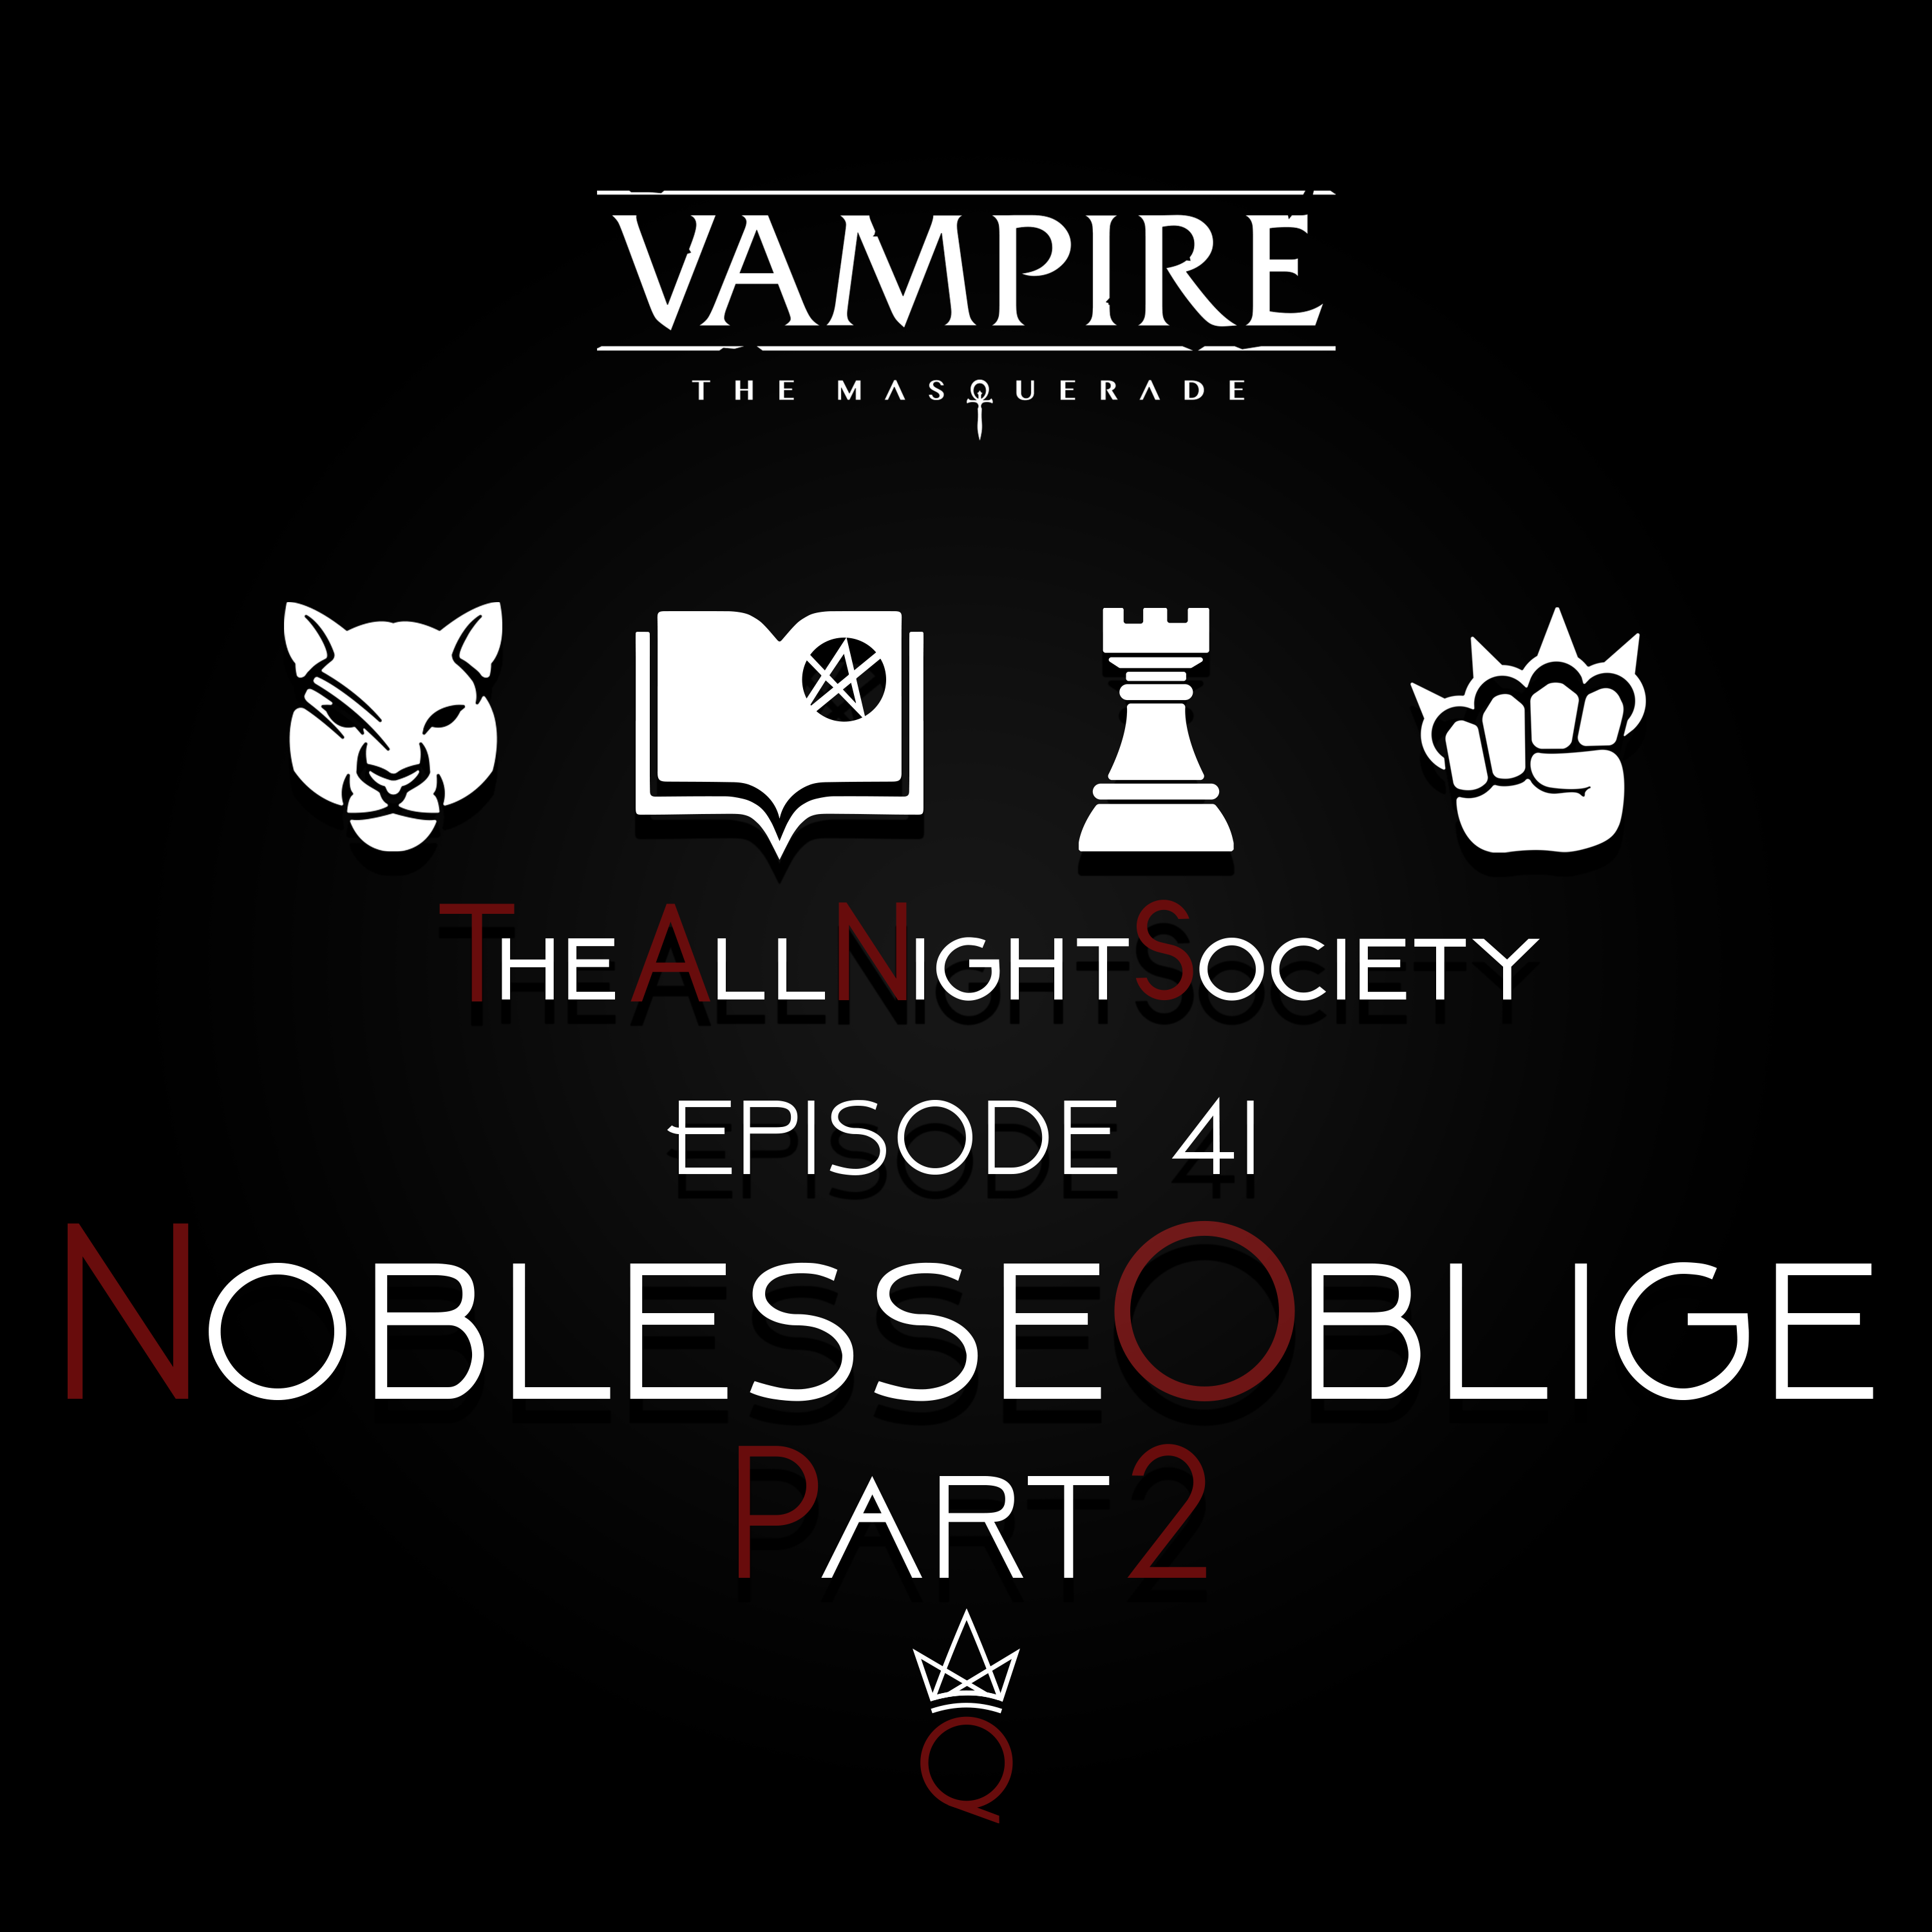 Episode 41 - Noblesse Oblige, Part 2